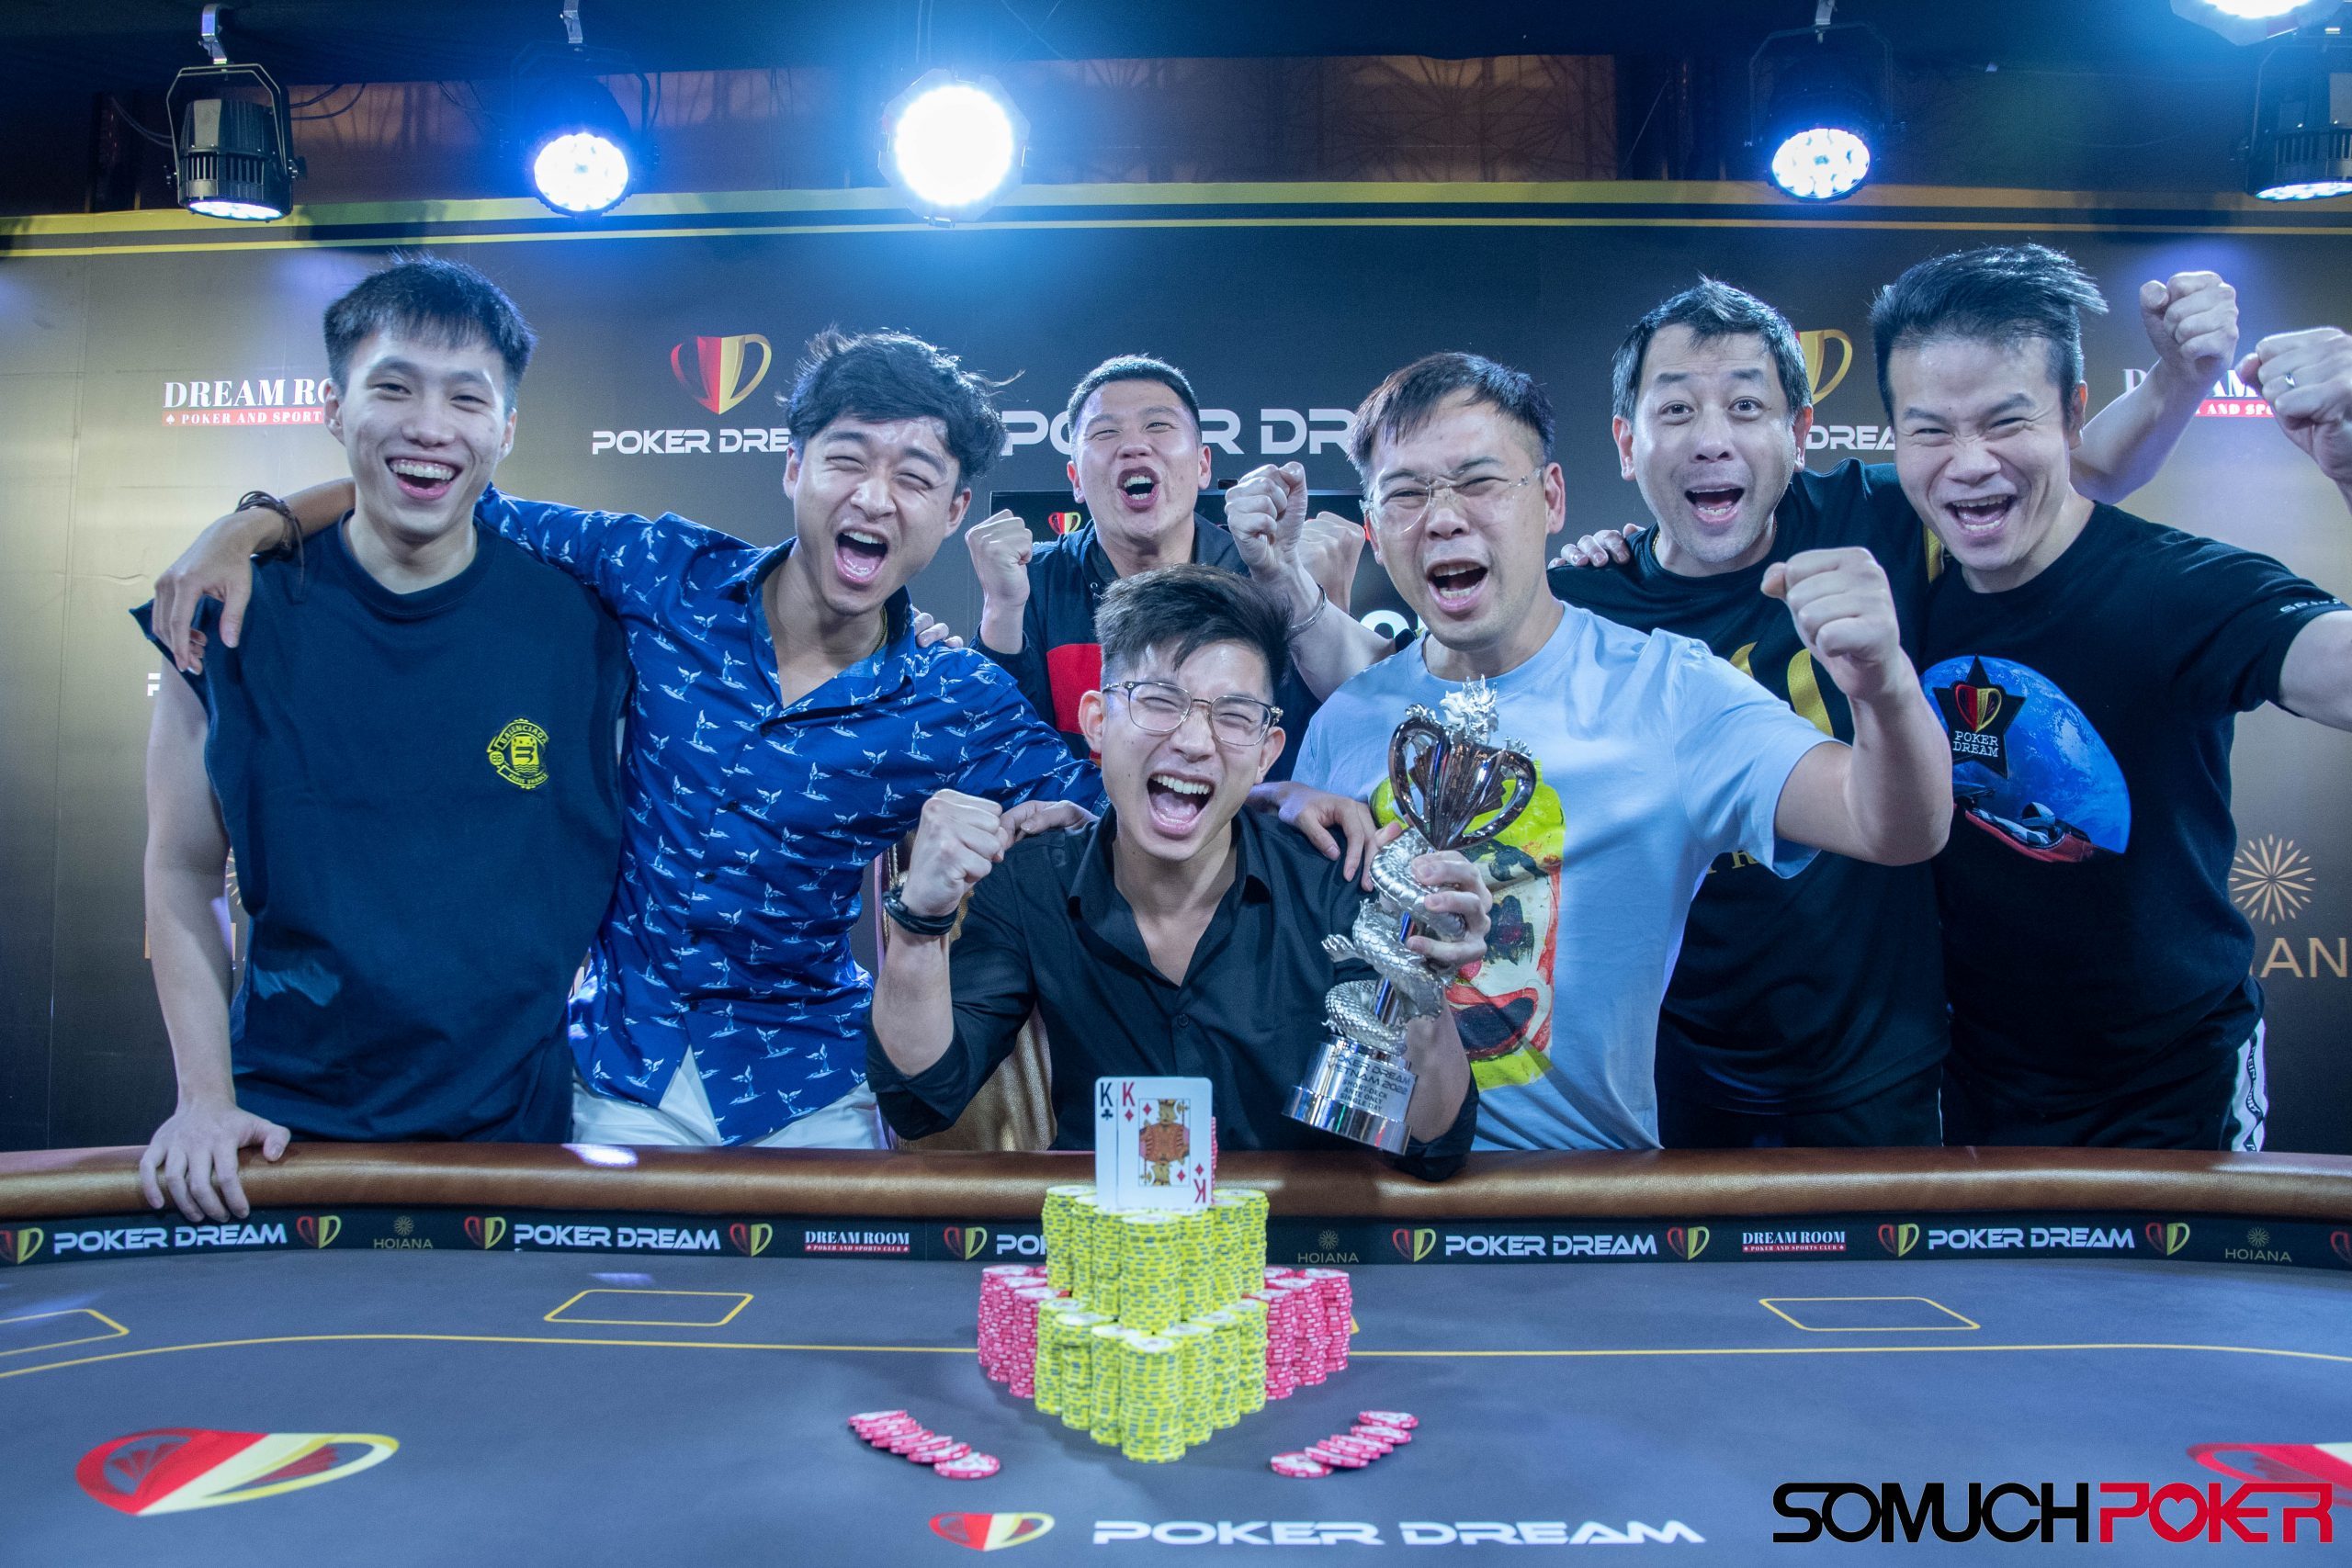 Poker Dream Vietnam: Vincent Li, Dang Thanh Luong, Gi Young Jin, Ryan Yum, Jonathan Looi win trophies